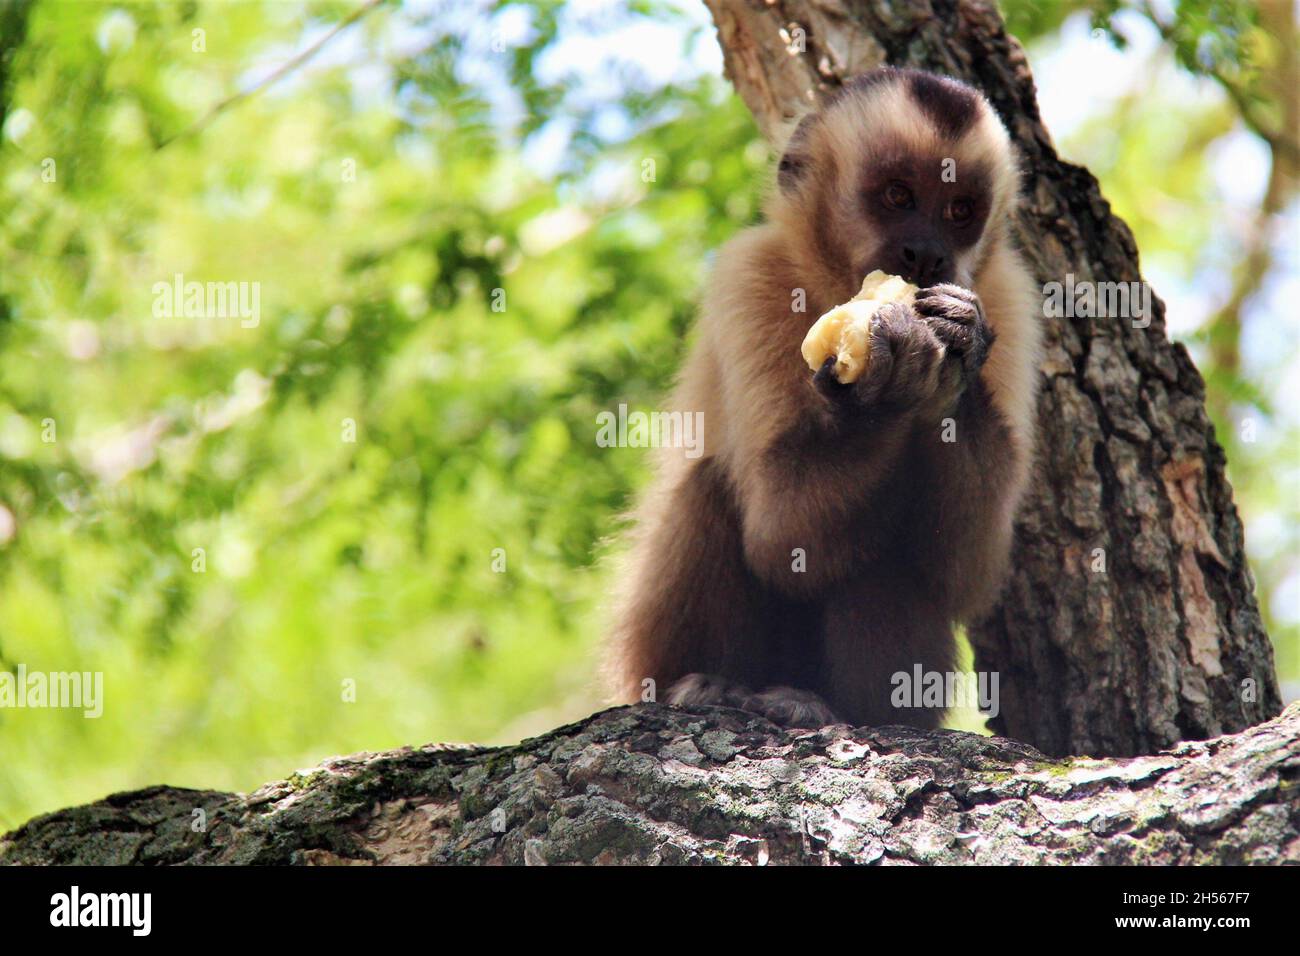 Singe, sur le dessus d'un tronc d'arbre, mangeant une banane avec les deux mains.Bonito - Mato Grosso do Sul - Brésil. Banque D'Images